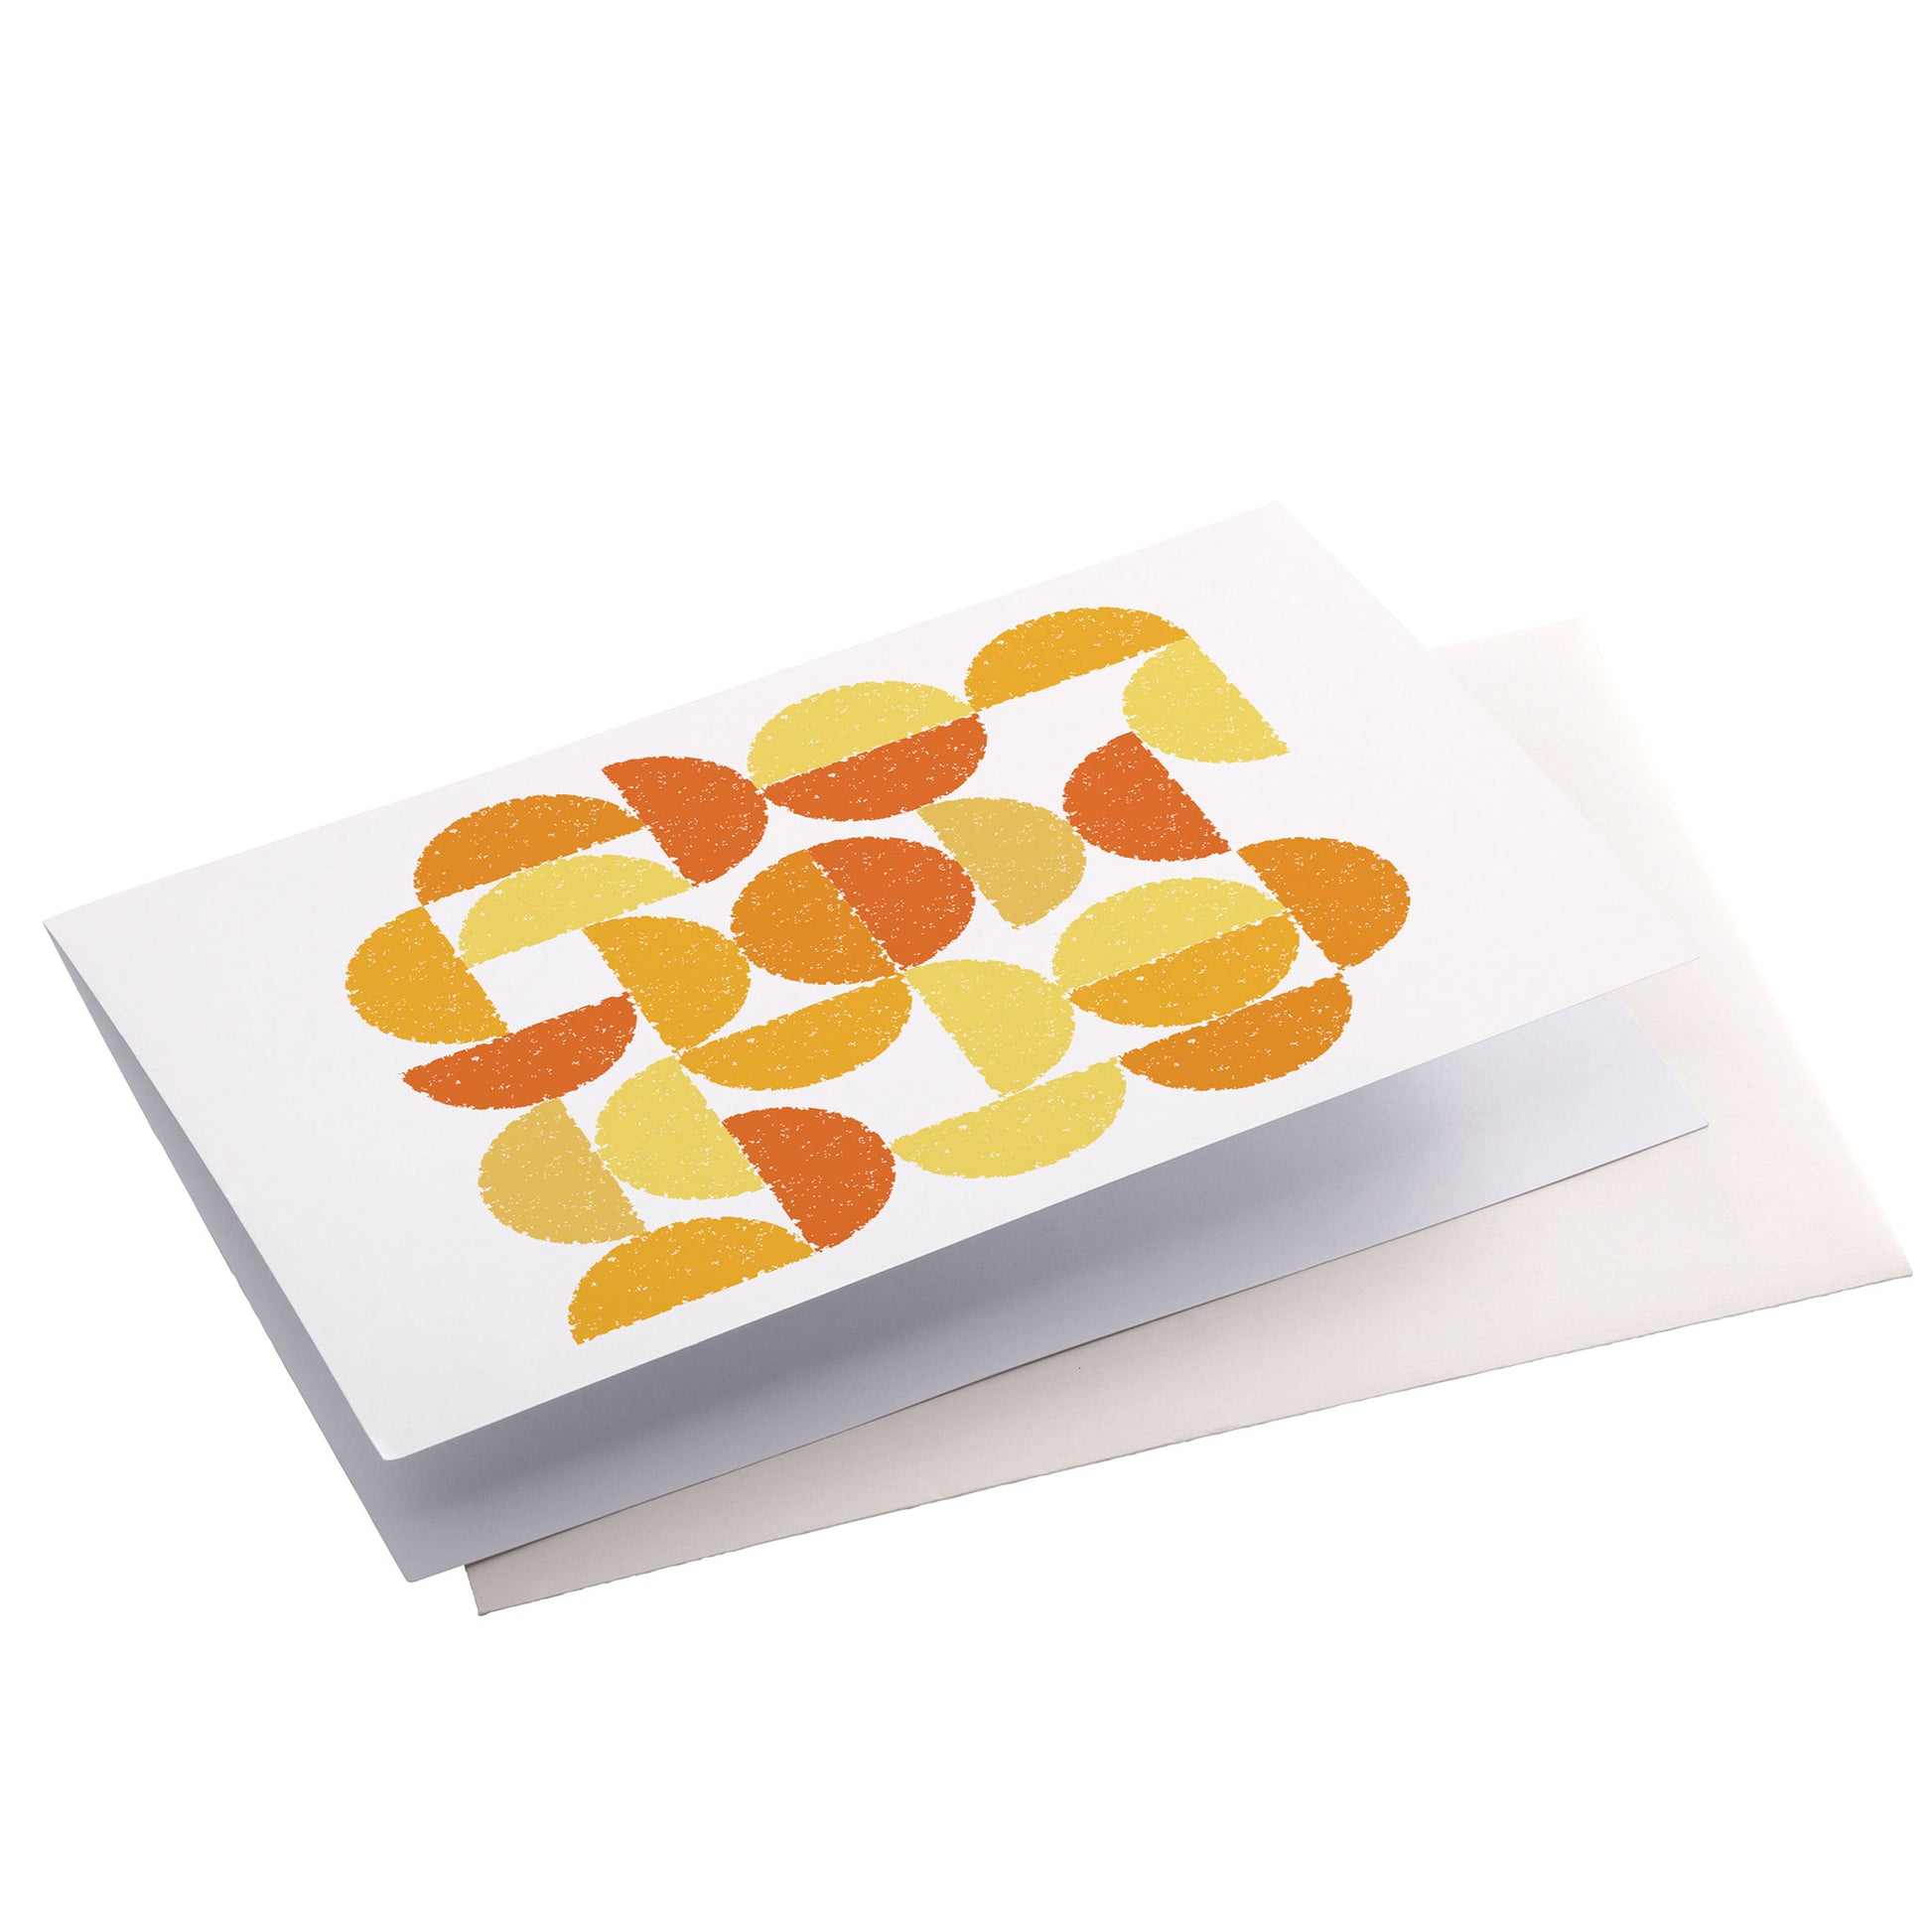 Productafbeelding, wenskaart "ronde kleuren naar sienna oker", zijaanzicht liggend met een envelop